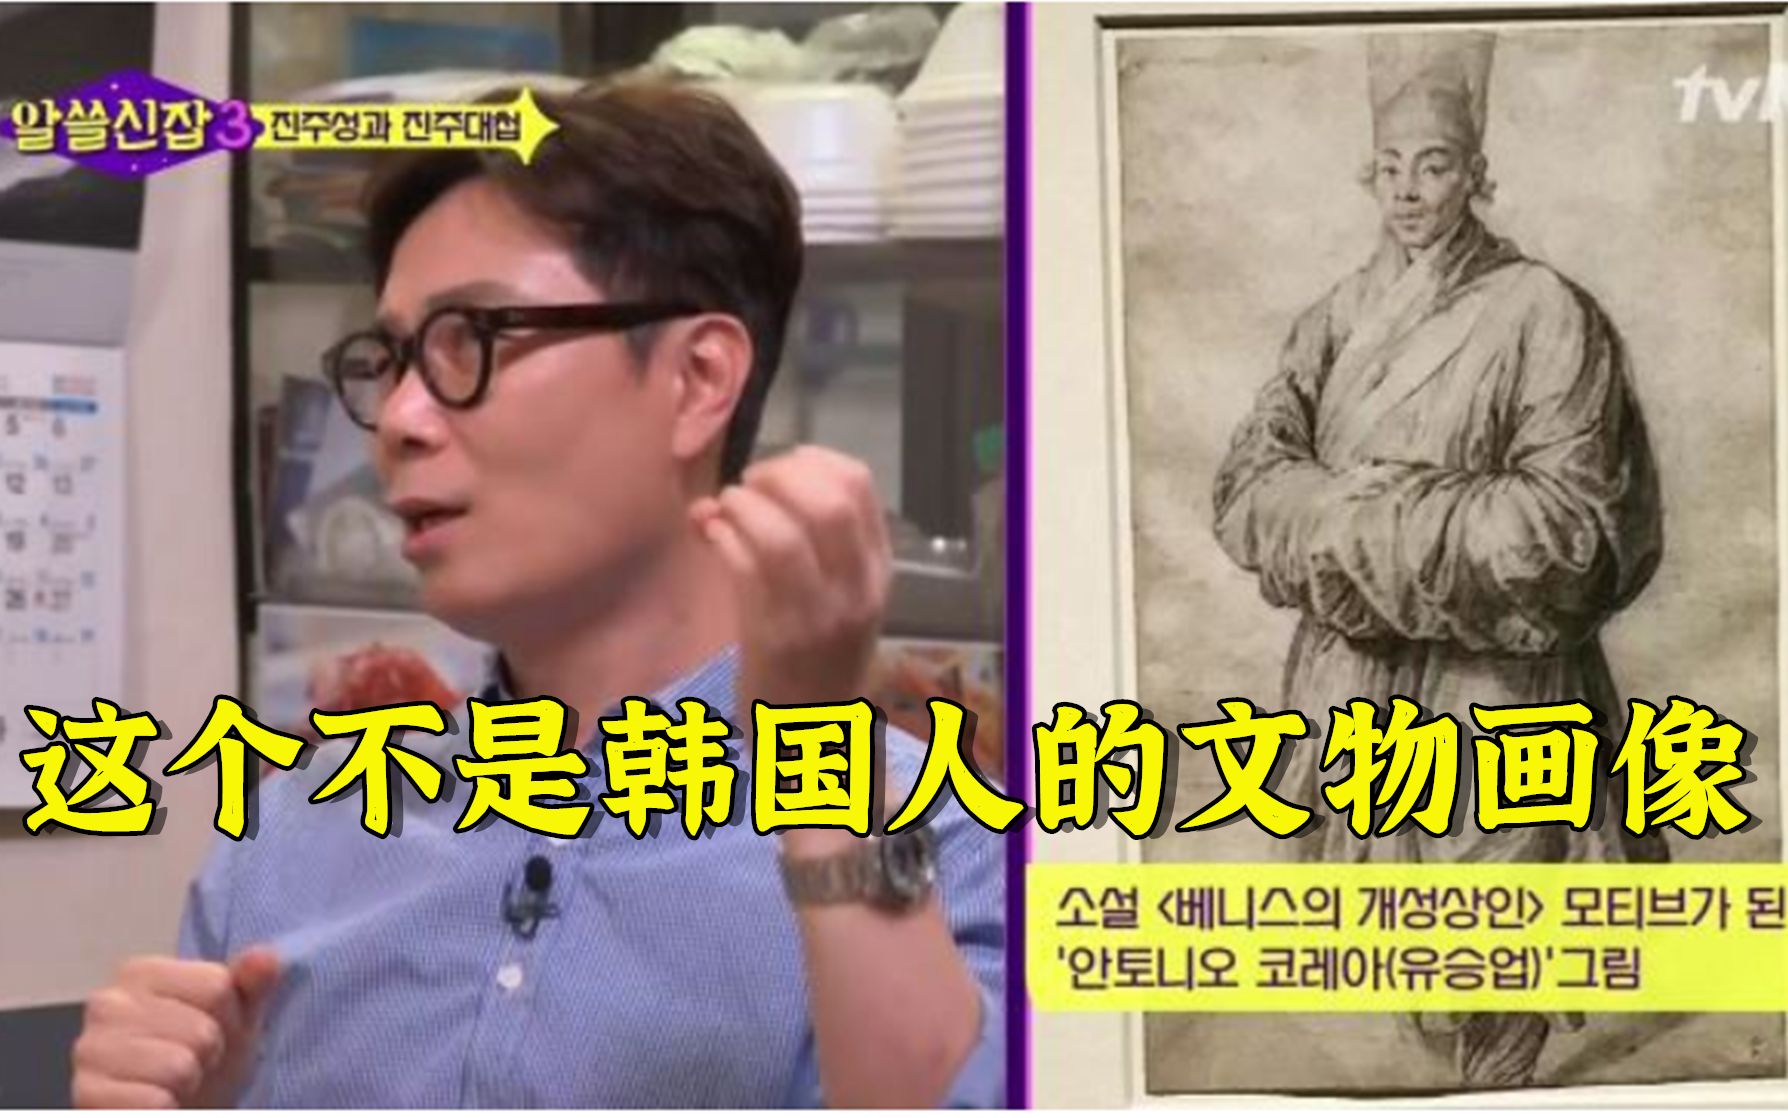 巨匠鲁本斯画作《穿韩服的男人》的主人公不是韩国人,而是中国明朝商人兴浦,韩国消费多年的神话破灭了